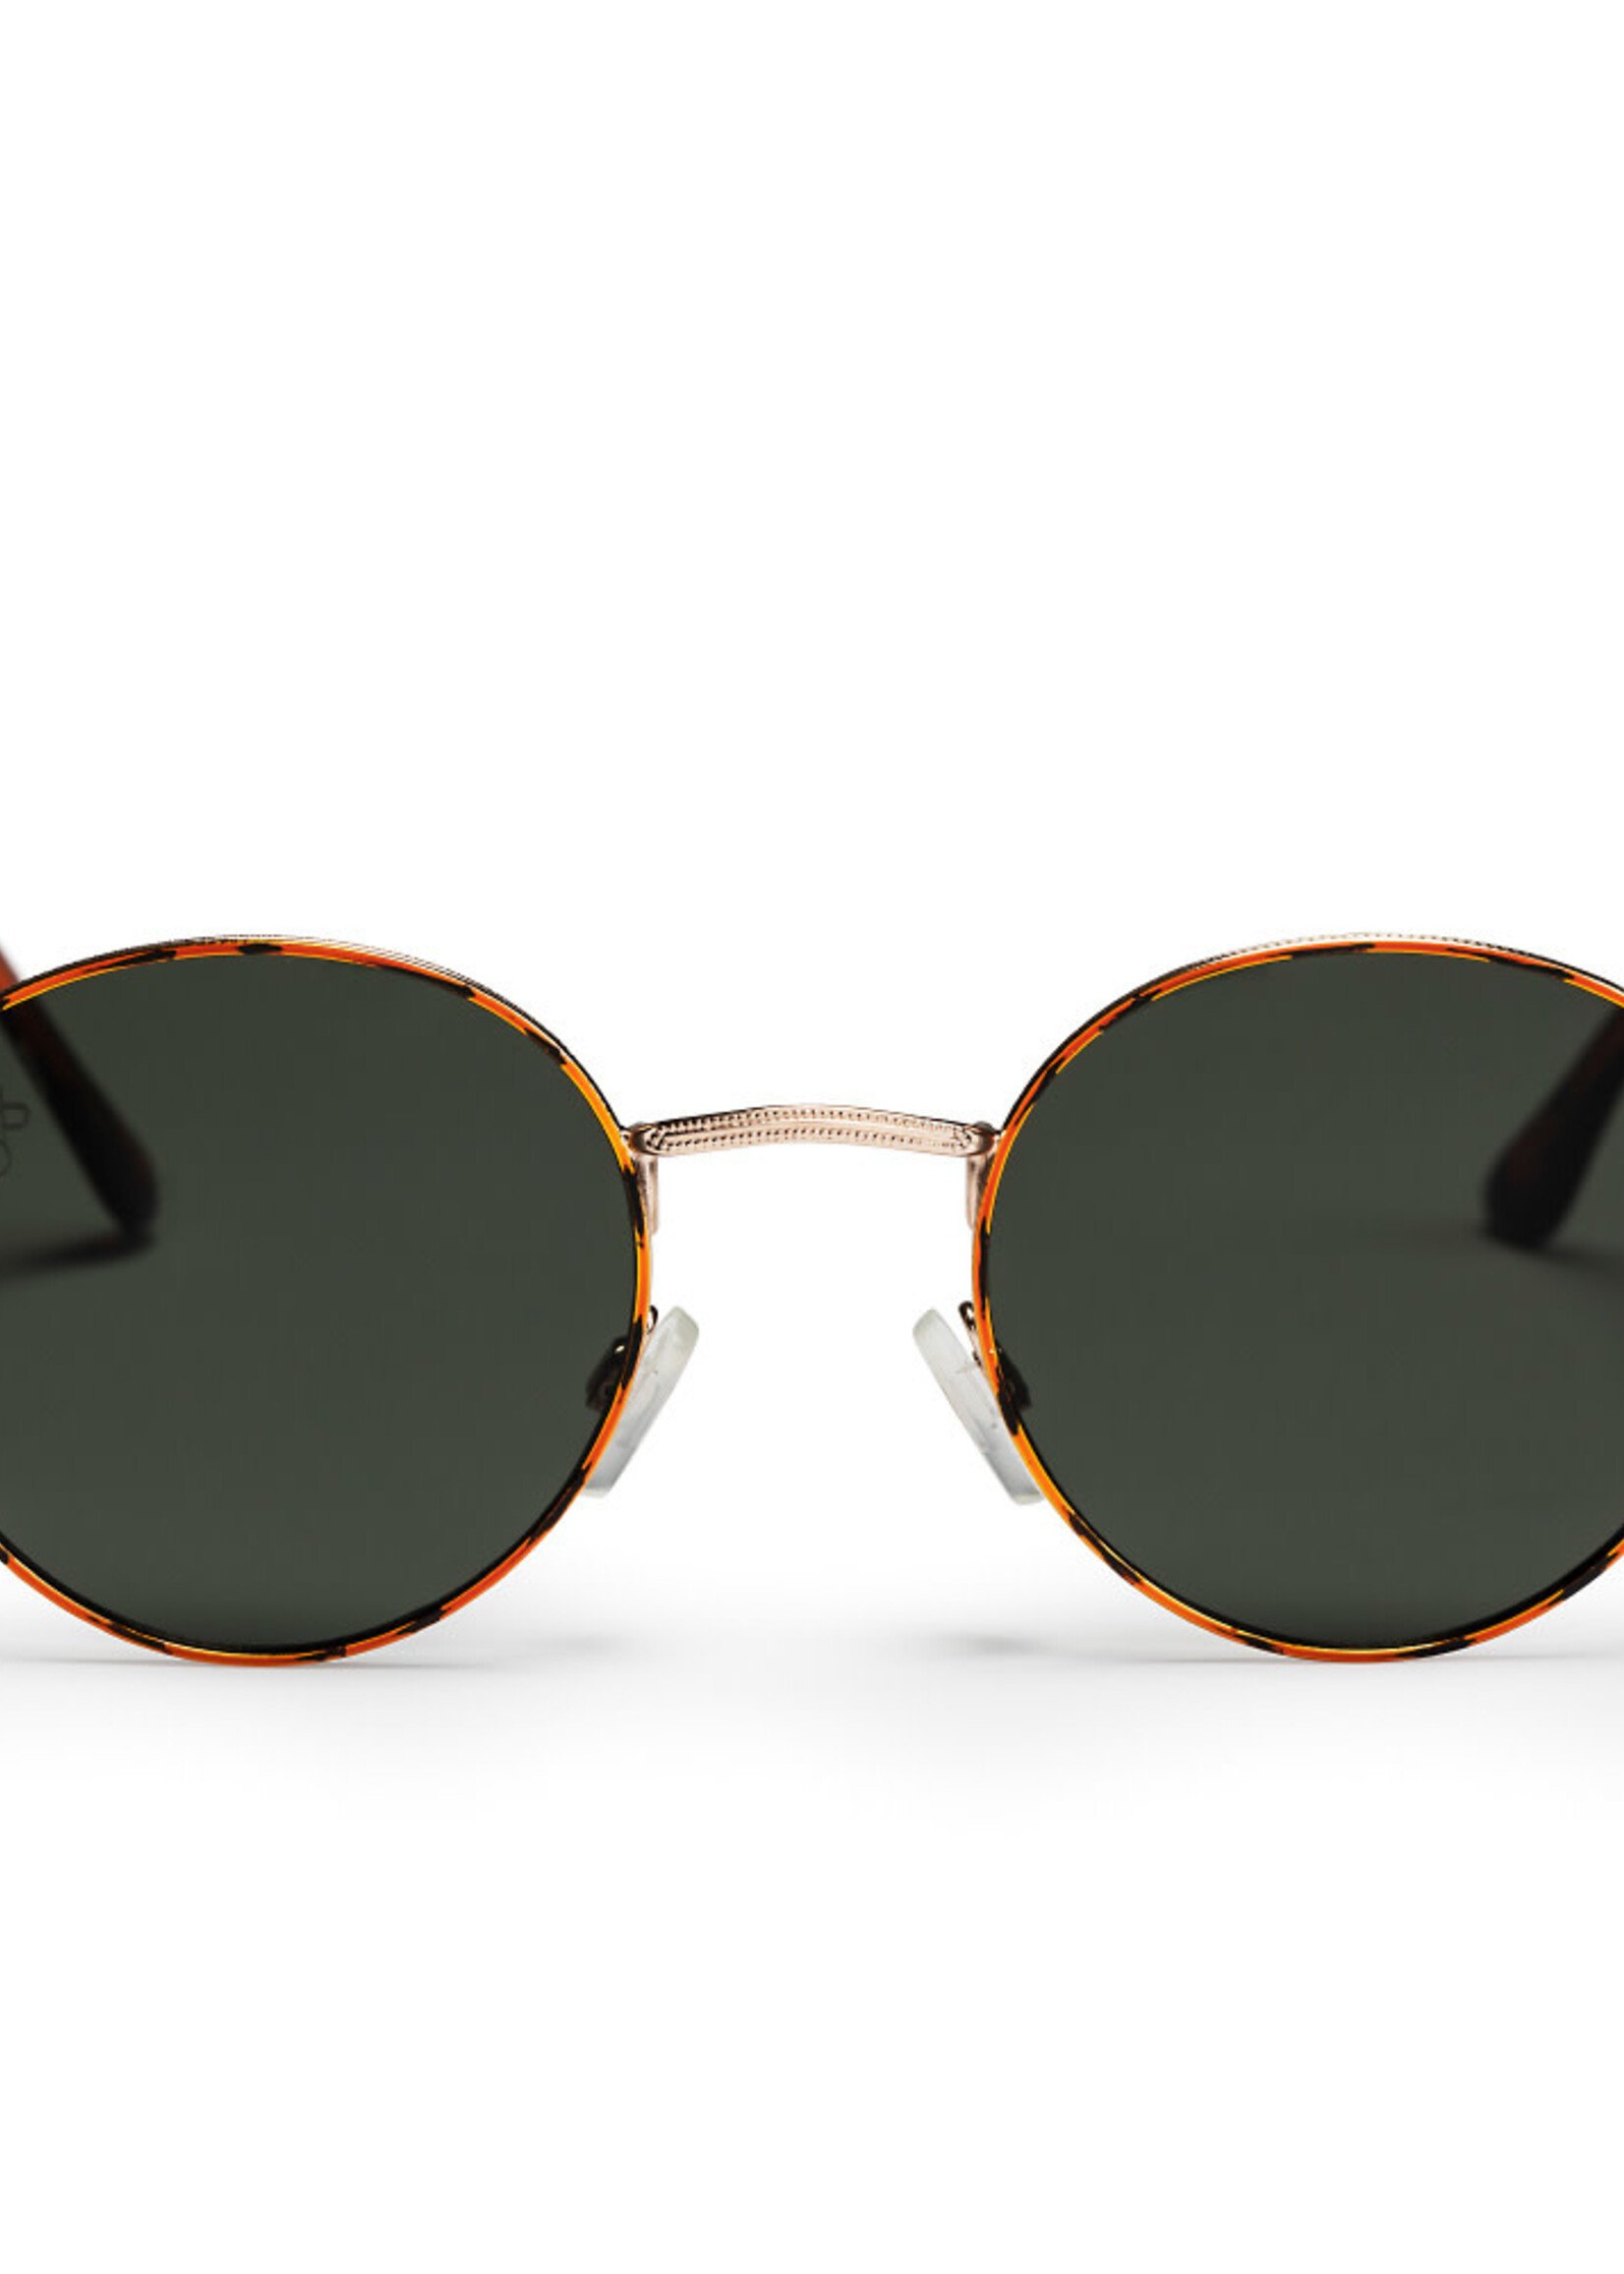 CHPO Brand Sunglasses Liam Turtle Brown Green